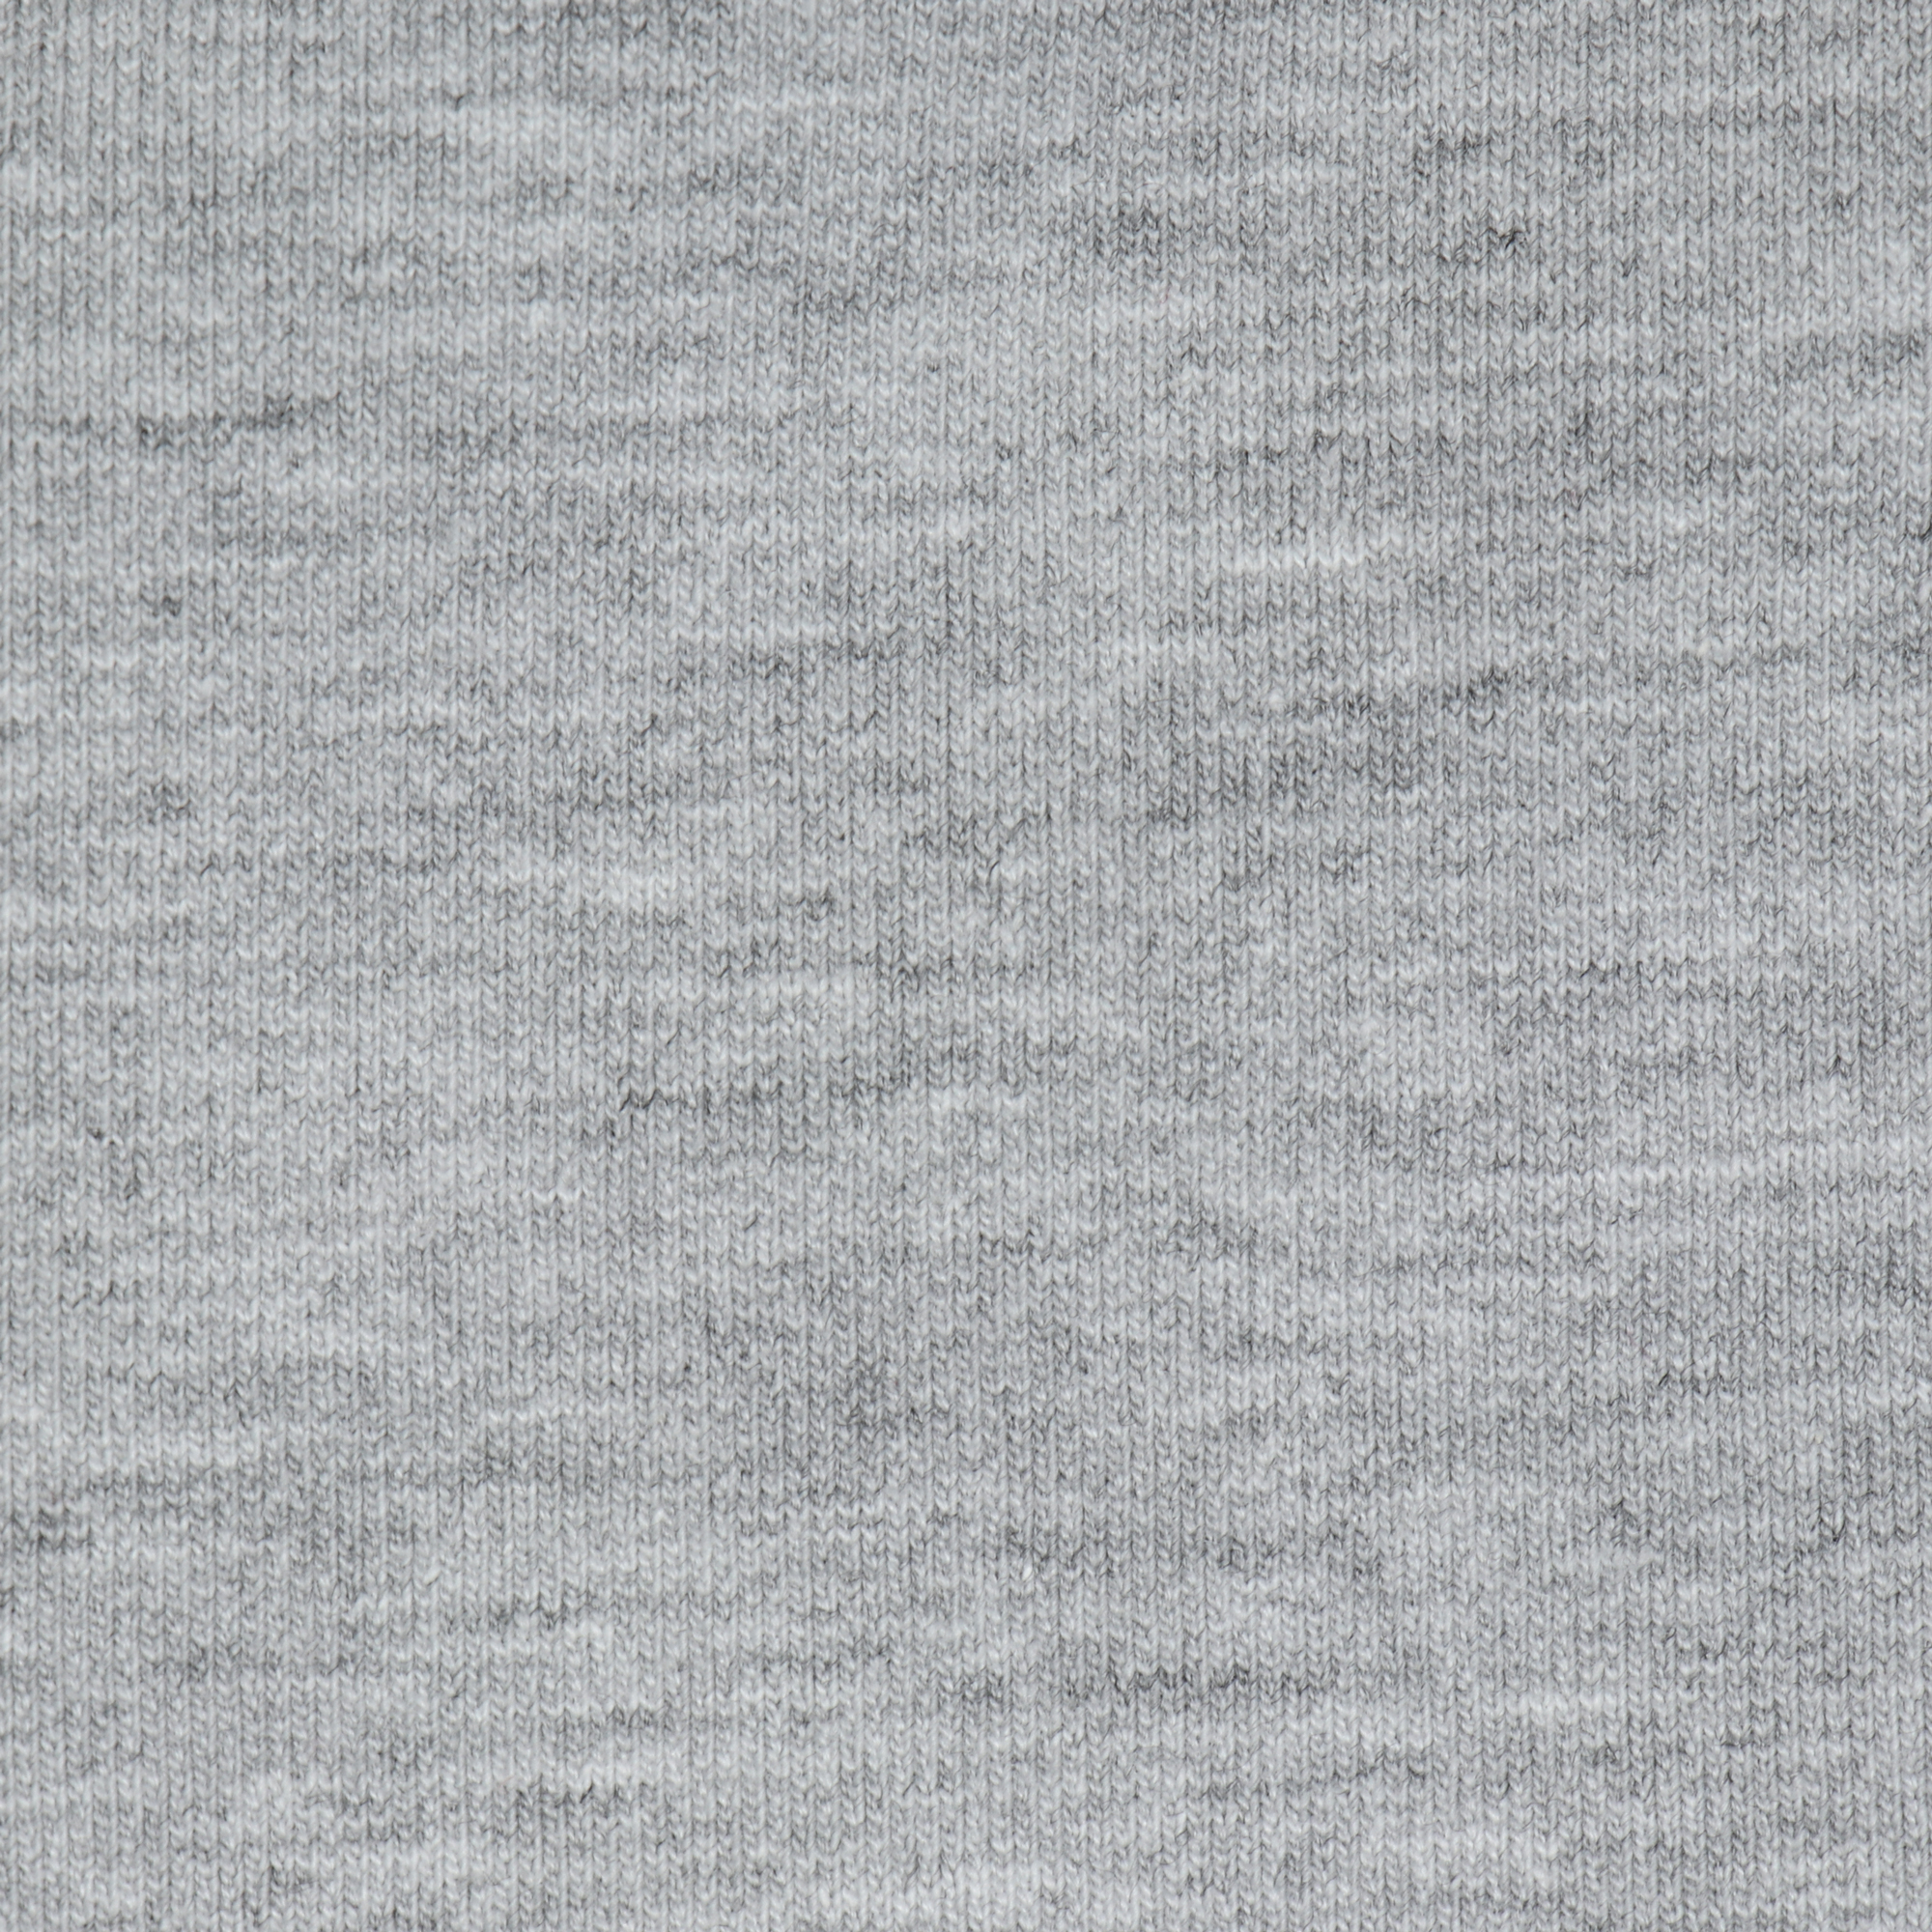 Женская толстовка с капюшоном Birlik серая меланж XXL, цвет серый, размер XXL - фото 5